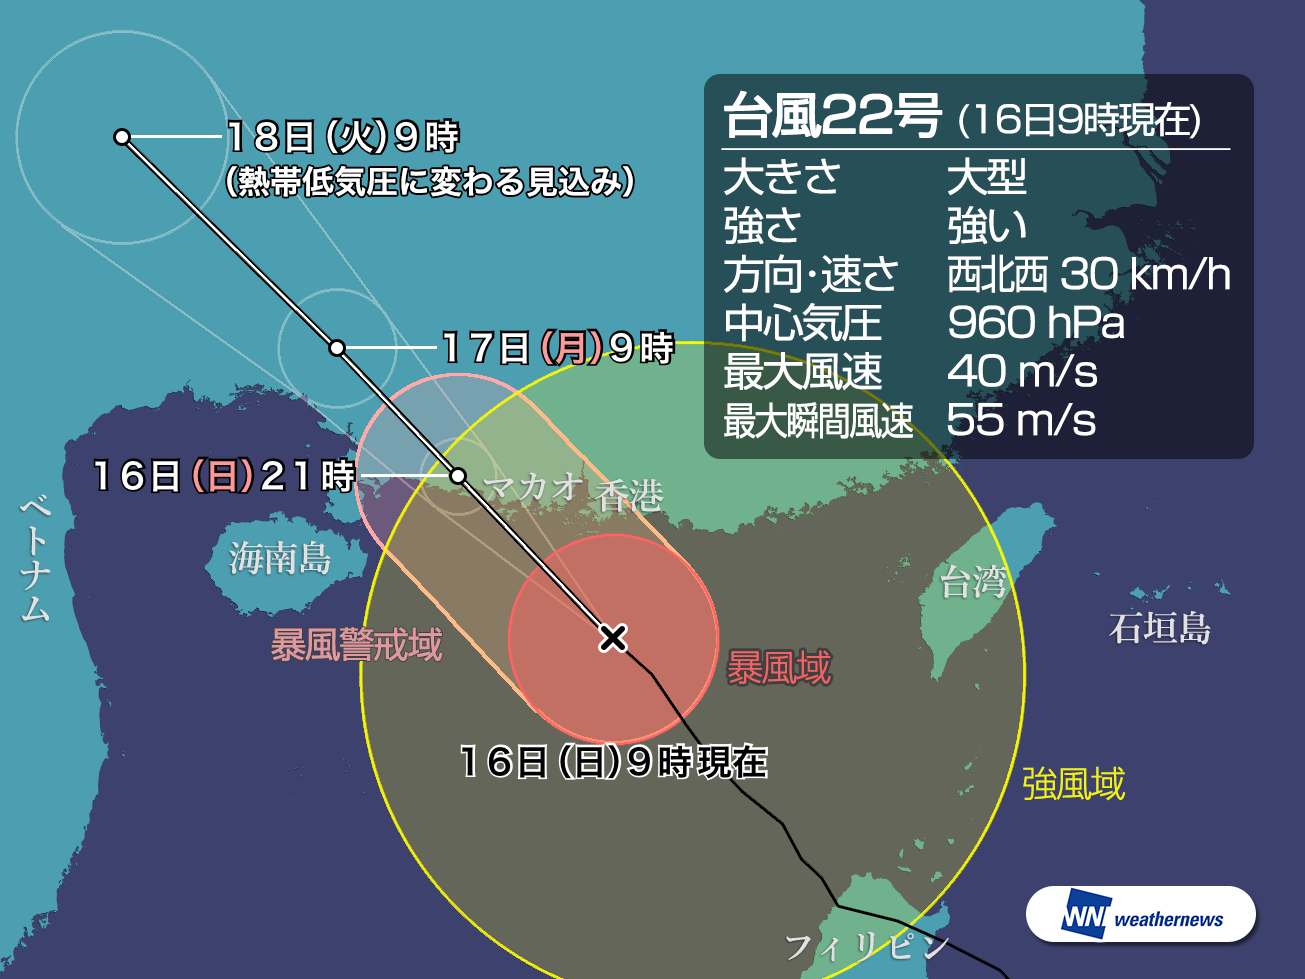 大型で強い台風22号 香港やマカオで暴風雨に警戒 ウェザーニュース